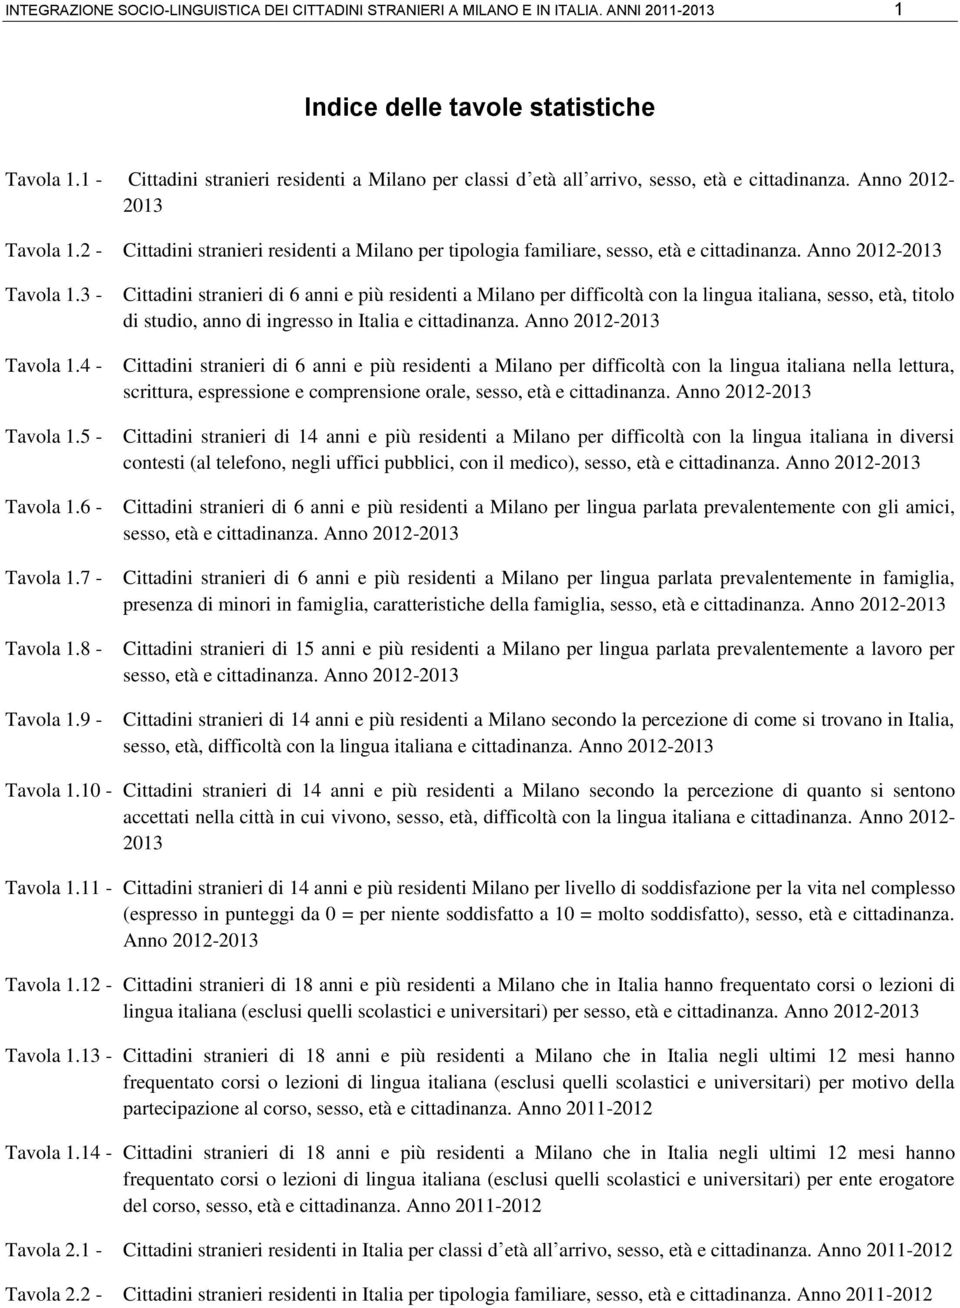 2 - Cittadini stranieri residenti a Milano per tipologia familiare, sesso, età e cittadinanza. Anno 2012-2013 Tavola 1.3 - Tavola 1.4 - Tavola 1.5 - Tavola 1.6 - Tavola 1.7 - Tavola 1.8 - Tavola 1.